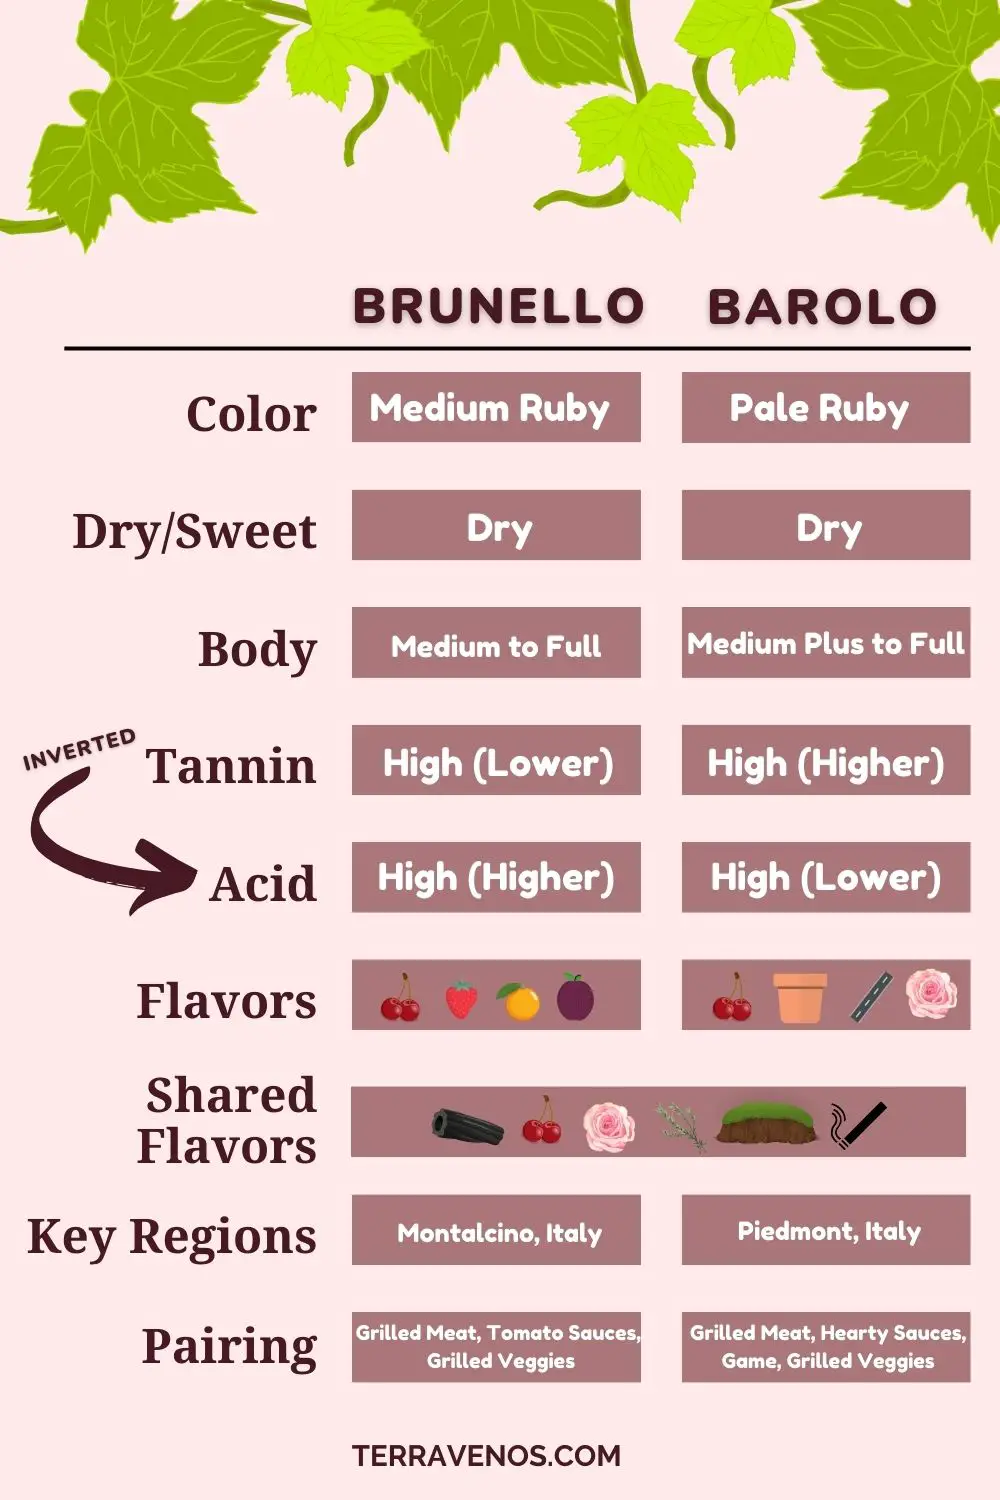 Barolo-vs-brunello-italian-wine-comparison-infographic